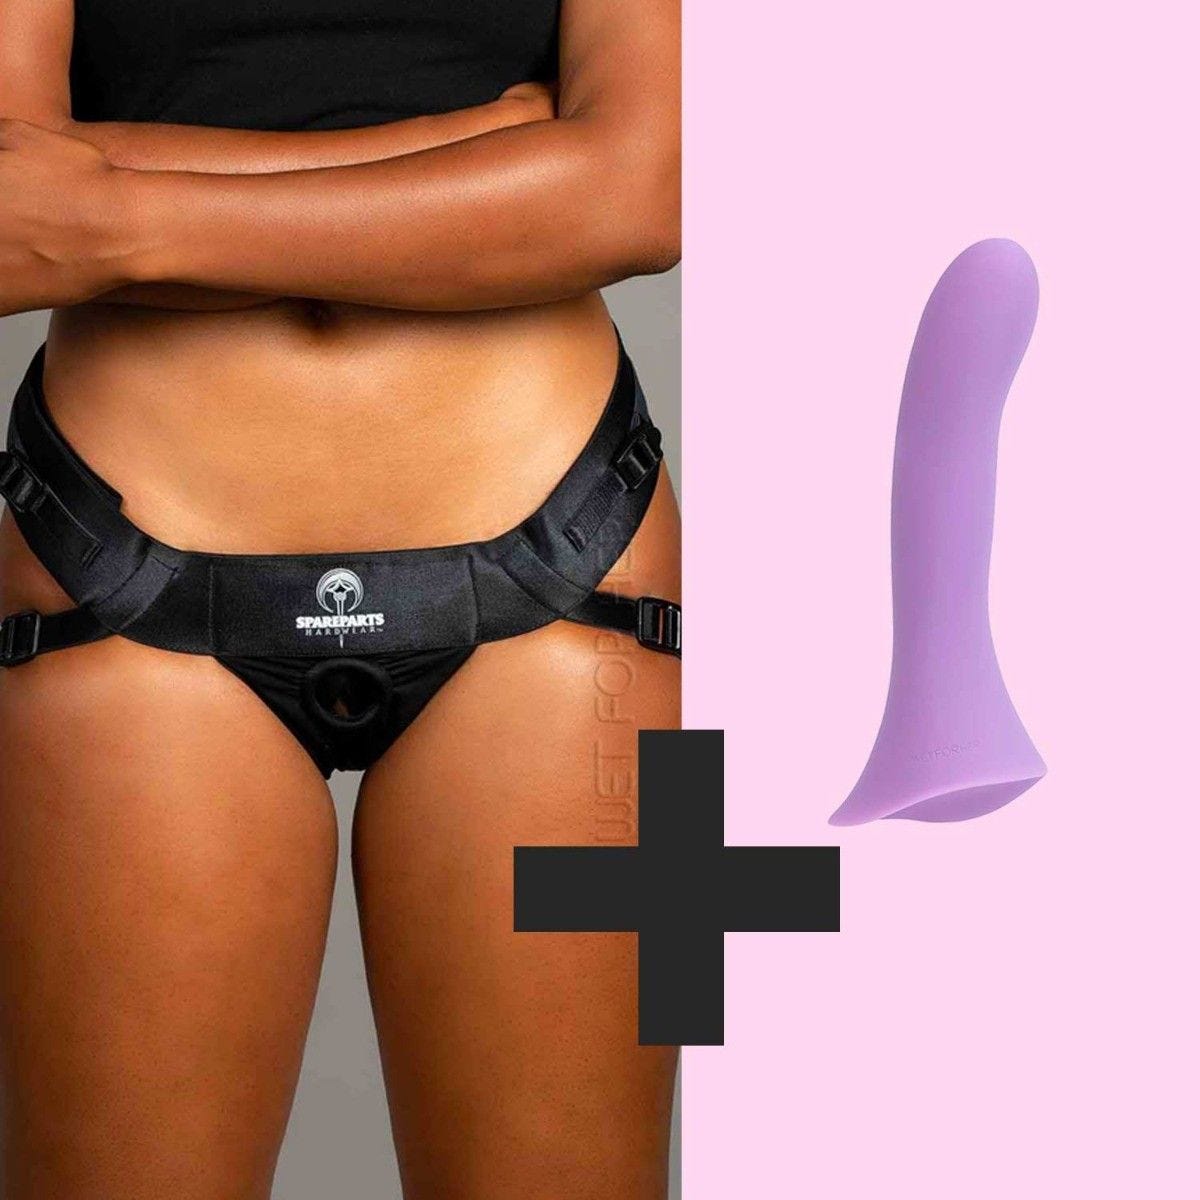 barbara buscemi add photo strap on dildo sex